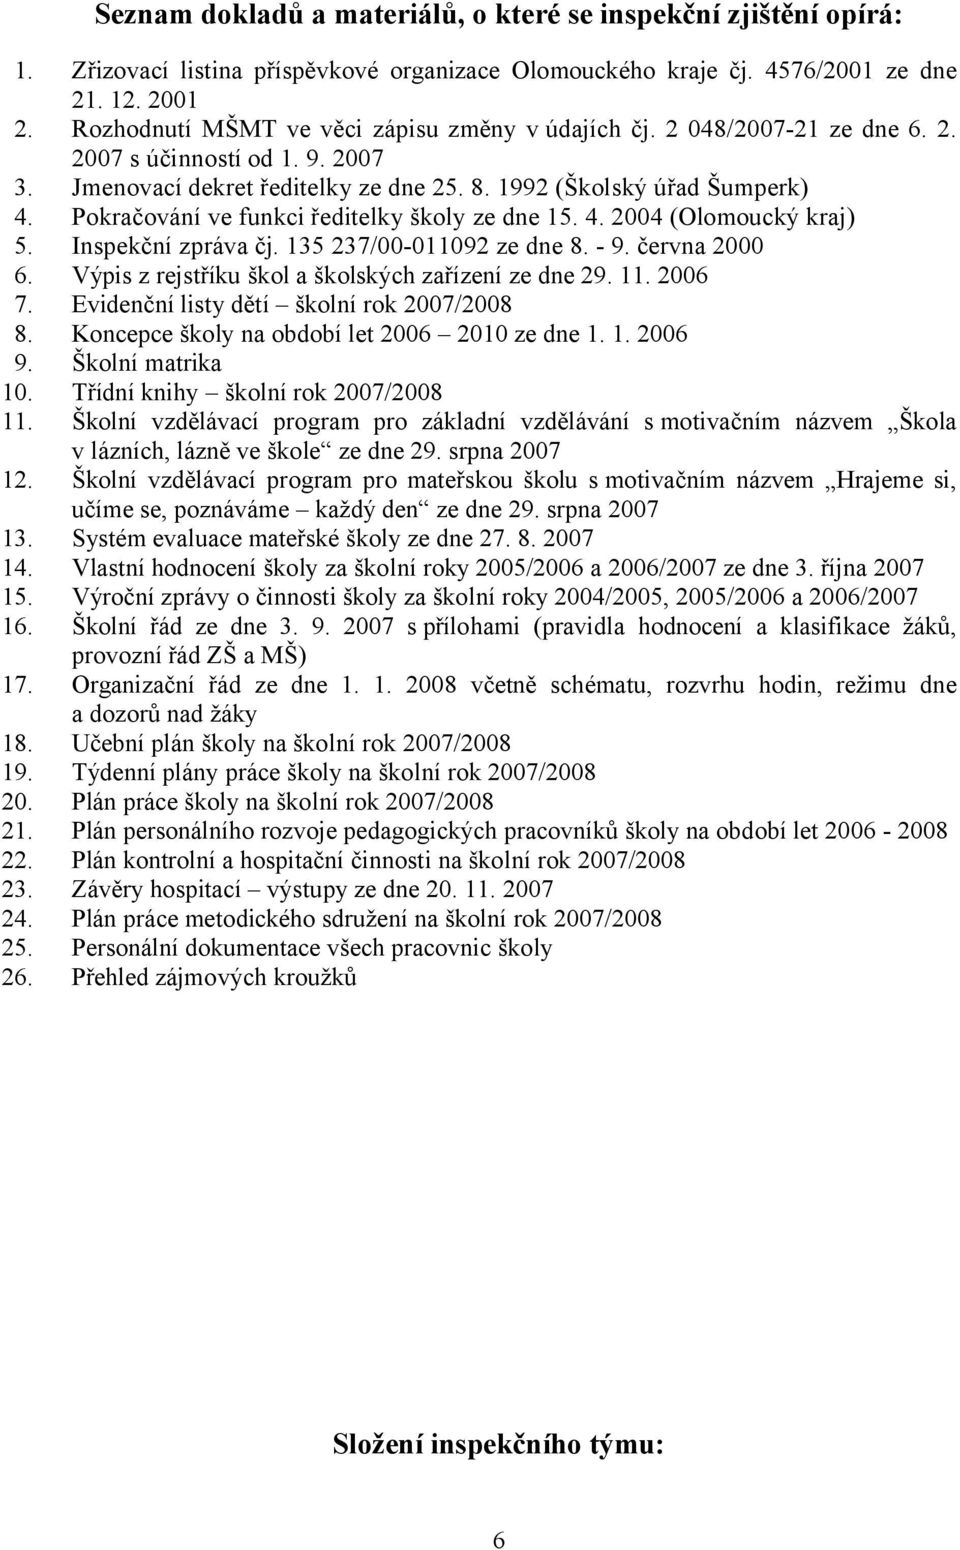 Pokračování ve funkci ředitelky školy ze dne 15. 4. 2004 (Olomoucký kraj) 5. Inspekční zpráva čj. 135 237/00-011092 ze dne 8. - 9. června 2000 6. Výpis z rejstříku škol a školských zařízení ze dne 29.